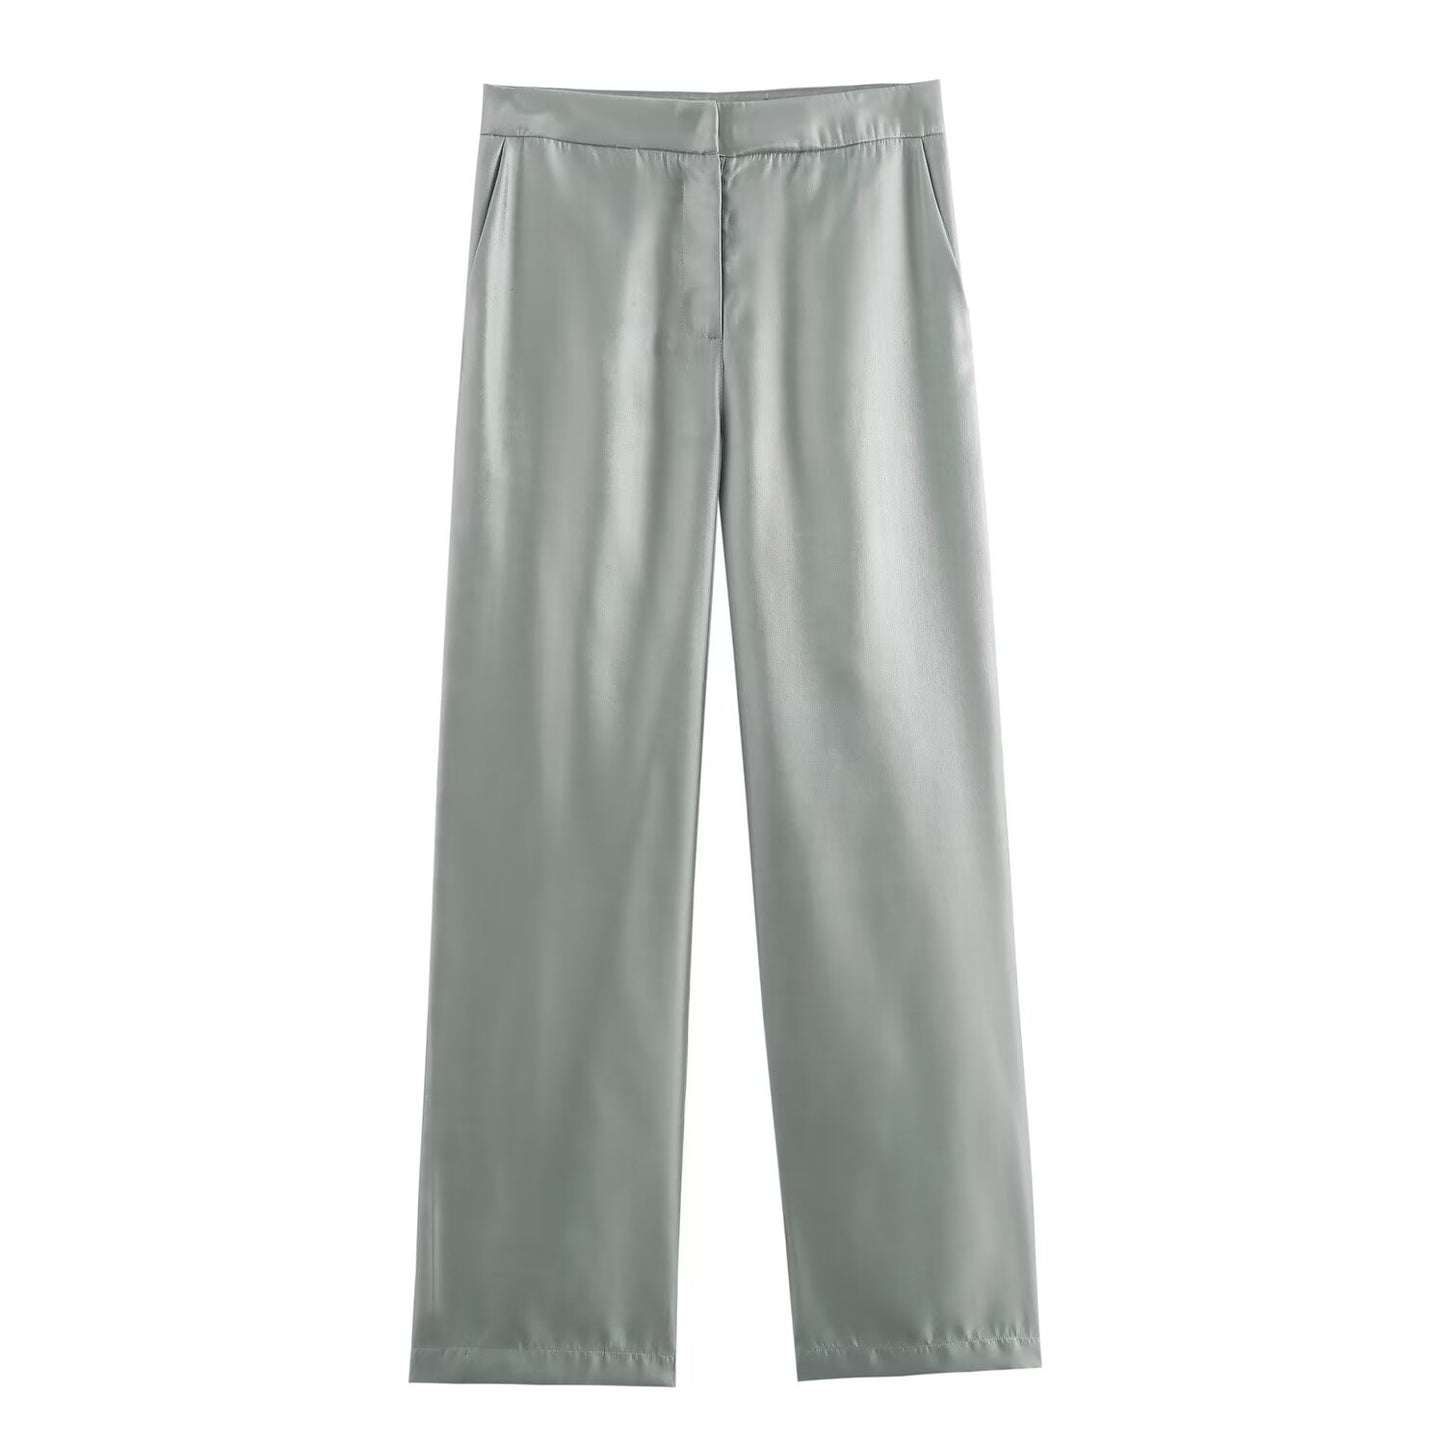 Damenbekleidung Sommer Hochwertige Metallic-Glanz-Lässige Metallic-Hose für Damen Hosen-Sets